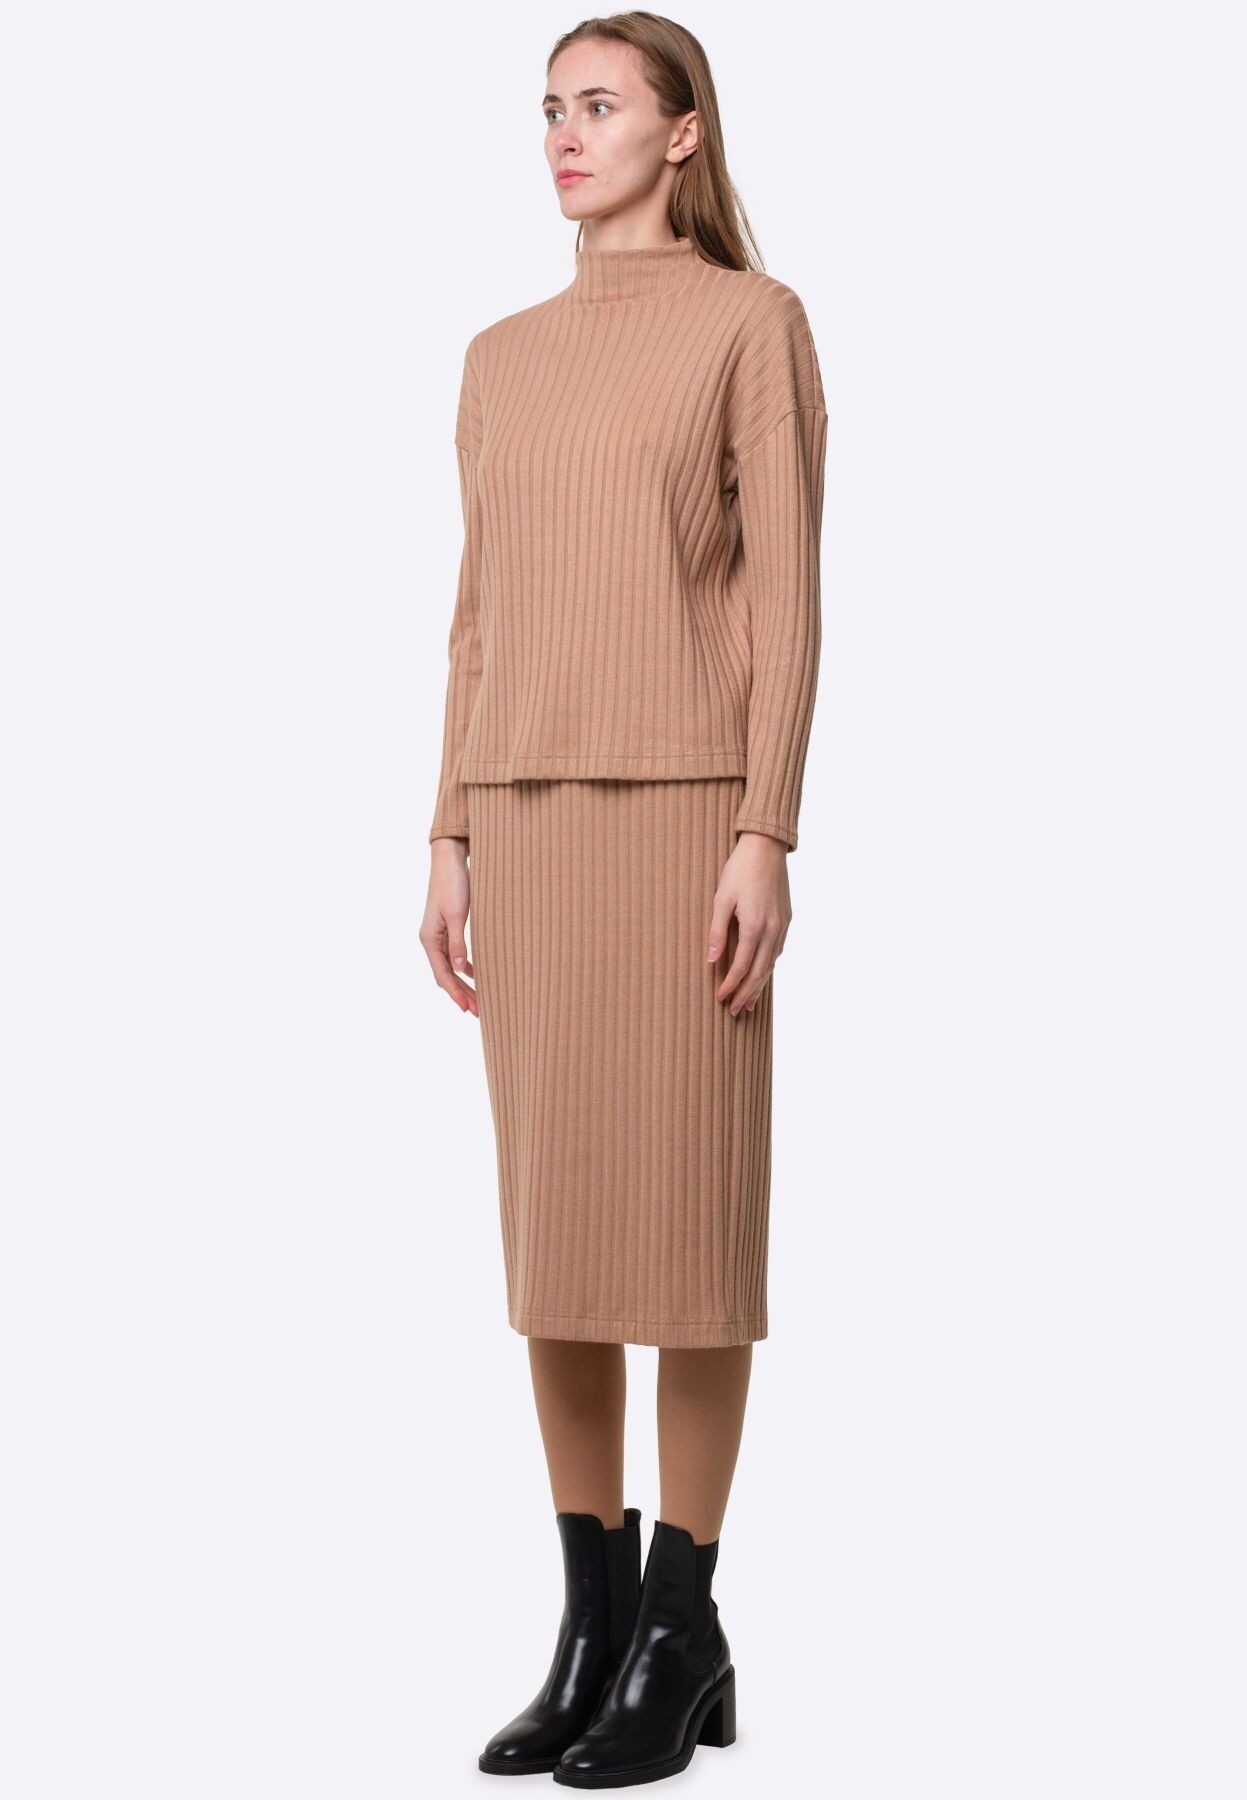 Beige knitted skirt 6255c